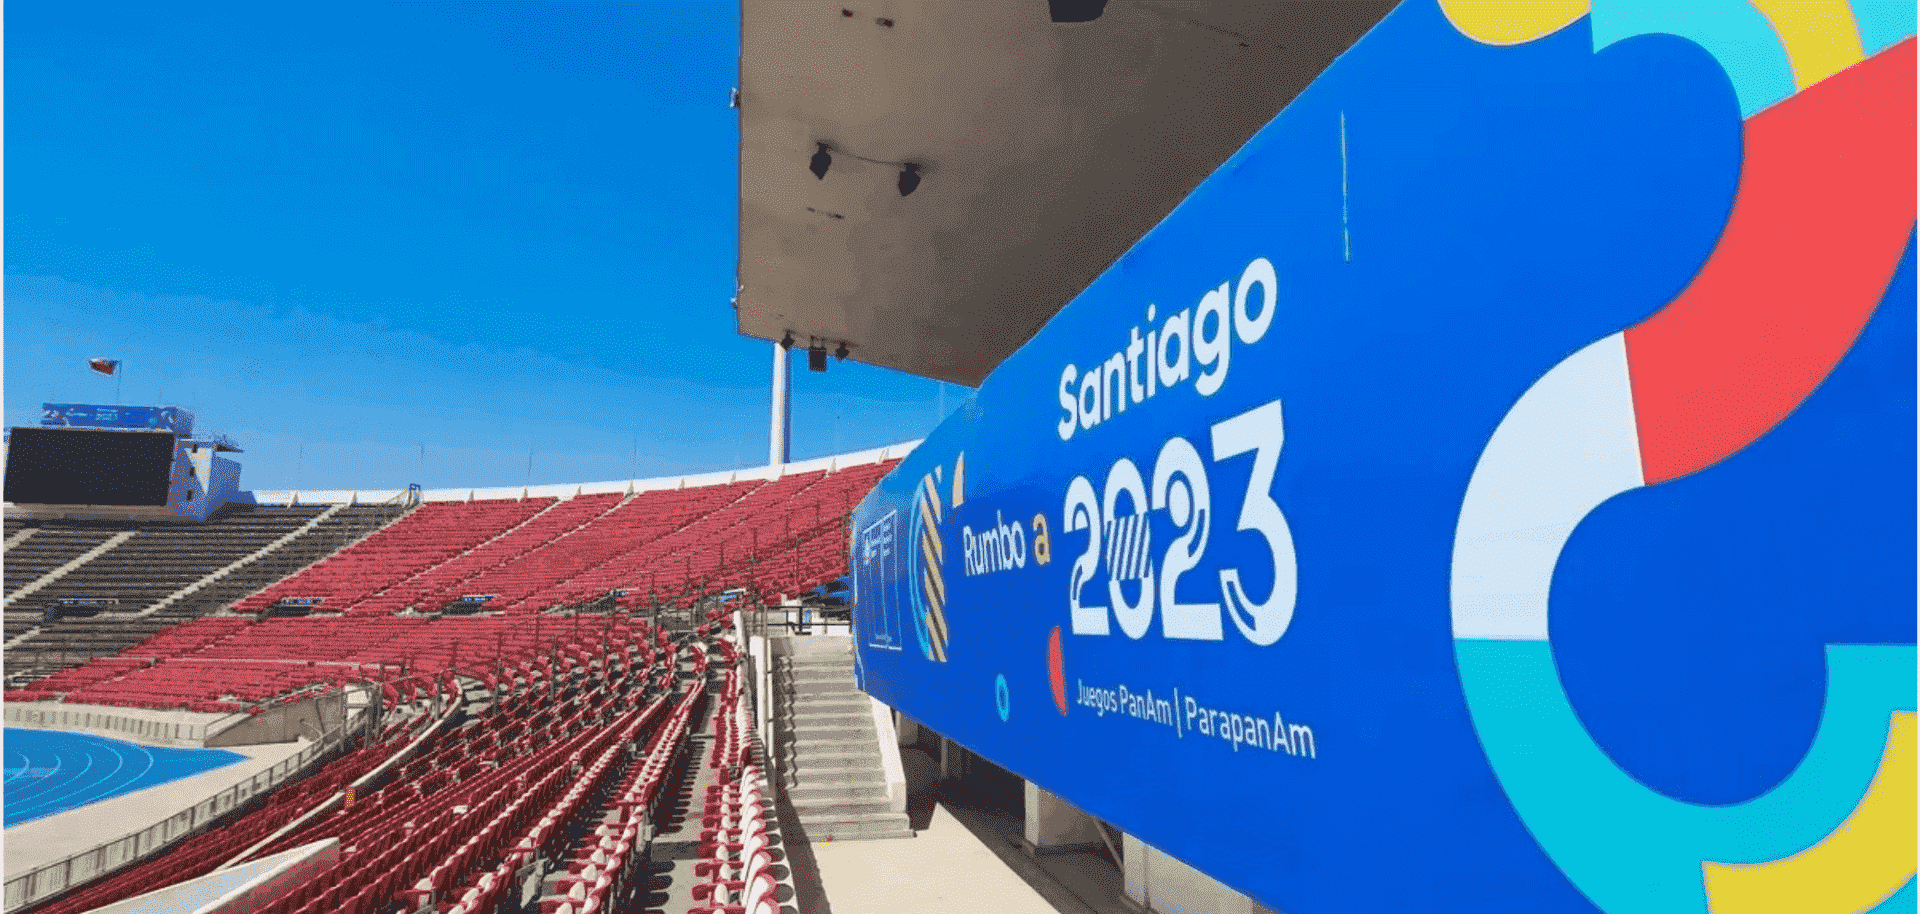 Santiago 2023 tendrá al menos una persona con discapacidad en cada área funciona. (Foto: Santiago 2023).